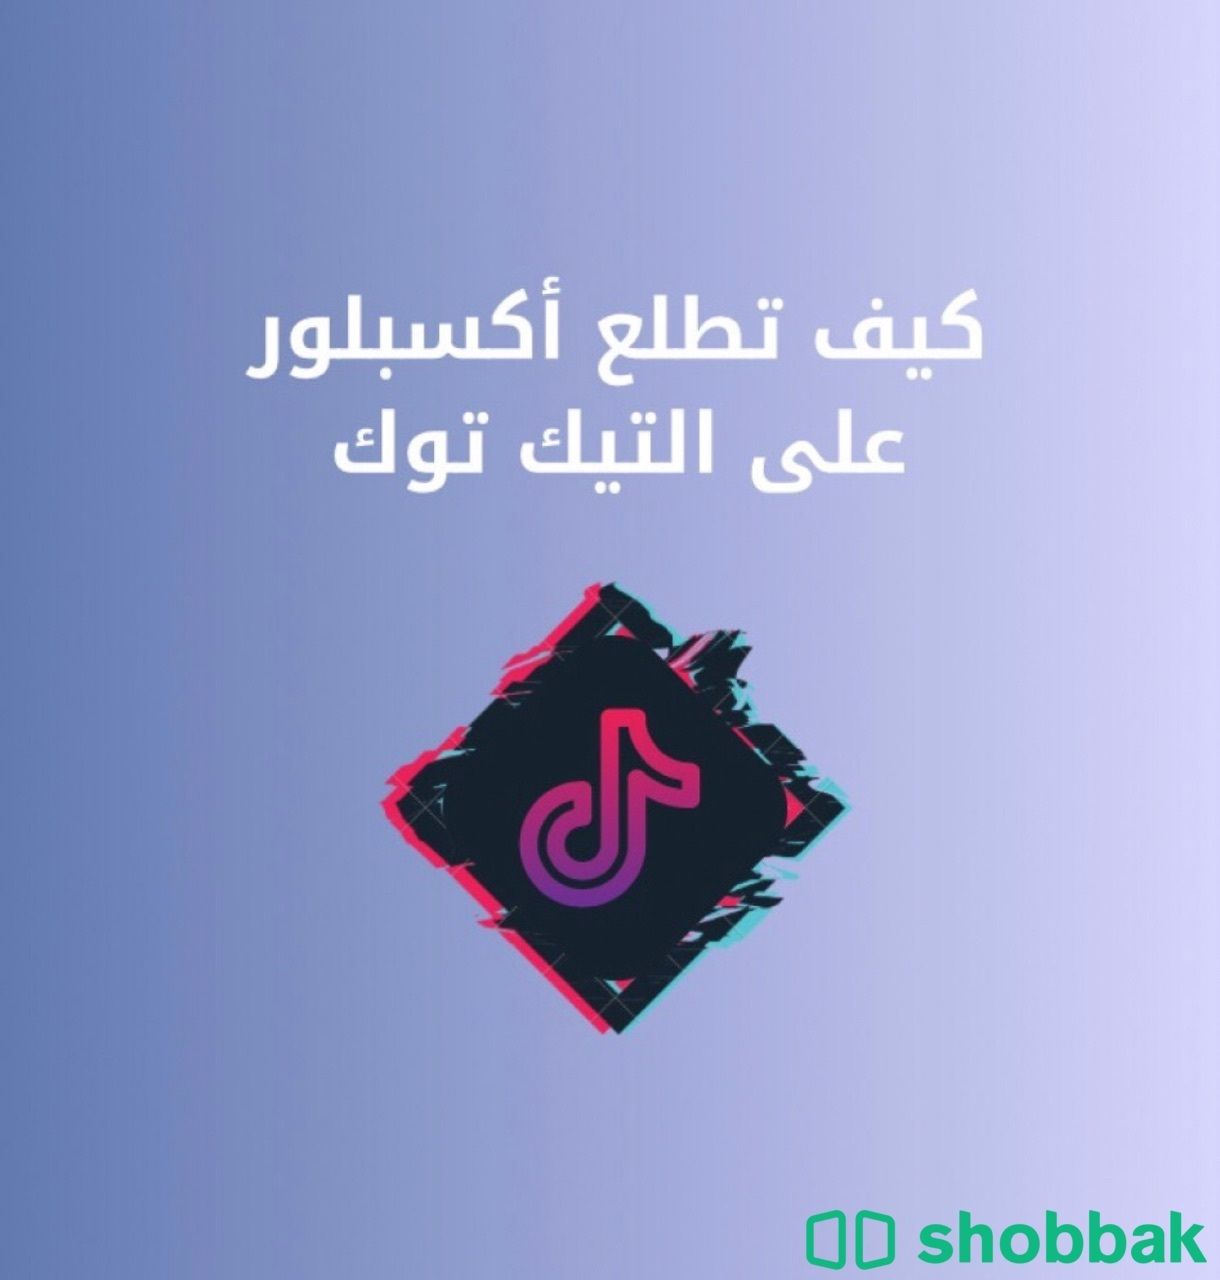 كيف تطلع اكسبلور على التيك توك  Shobbak Saudi Arabia